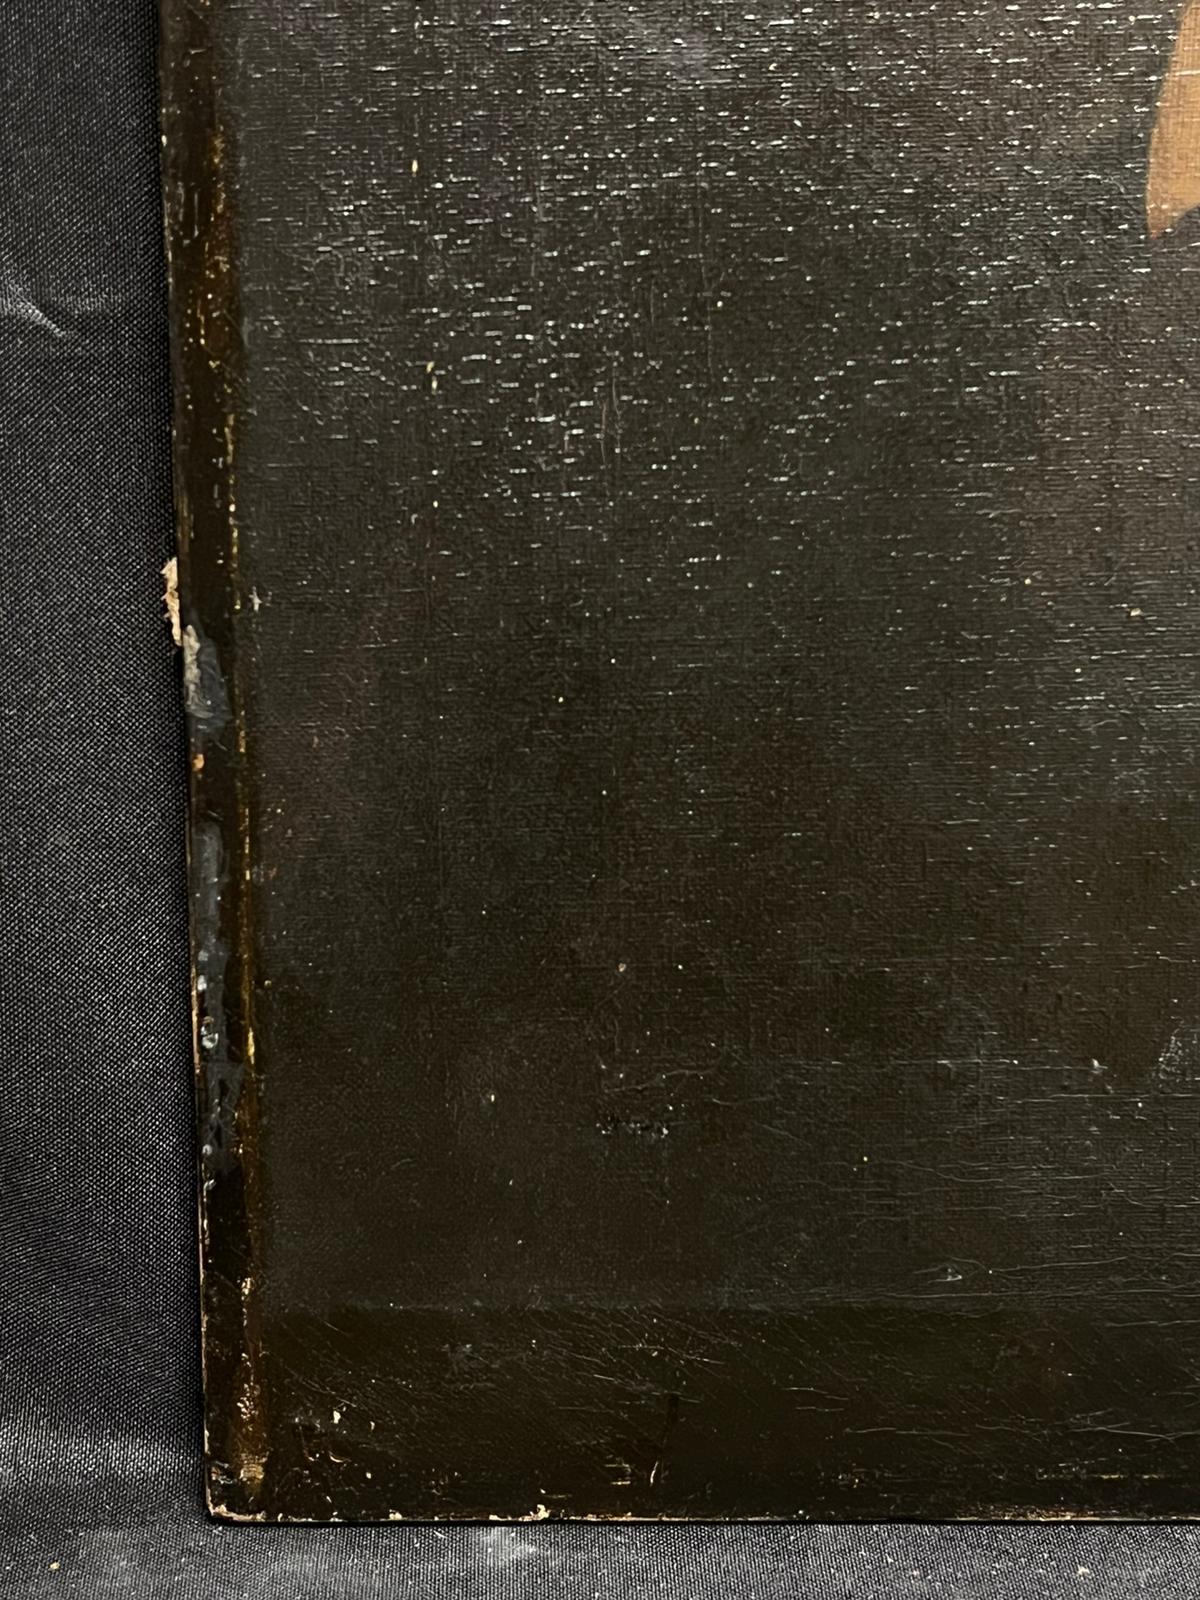 Porträt von William Shakespeare
Britischer Künstler, 18. Jahrhundert
Öl auf Leinwand, ungerahmt
Leinwand: 24 x 18 Zoll
Provenienz: Privatsammlung, England
Zustand: sehr guter und gesunder Zustand, kleine Oberflächenkratzer und Schrammen. 